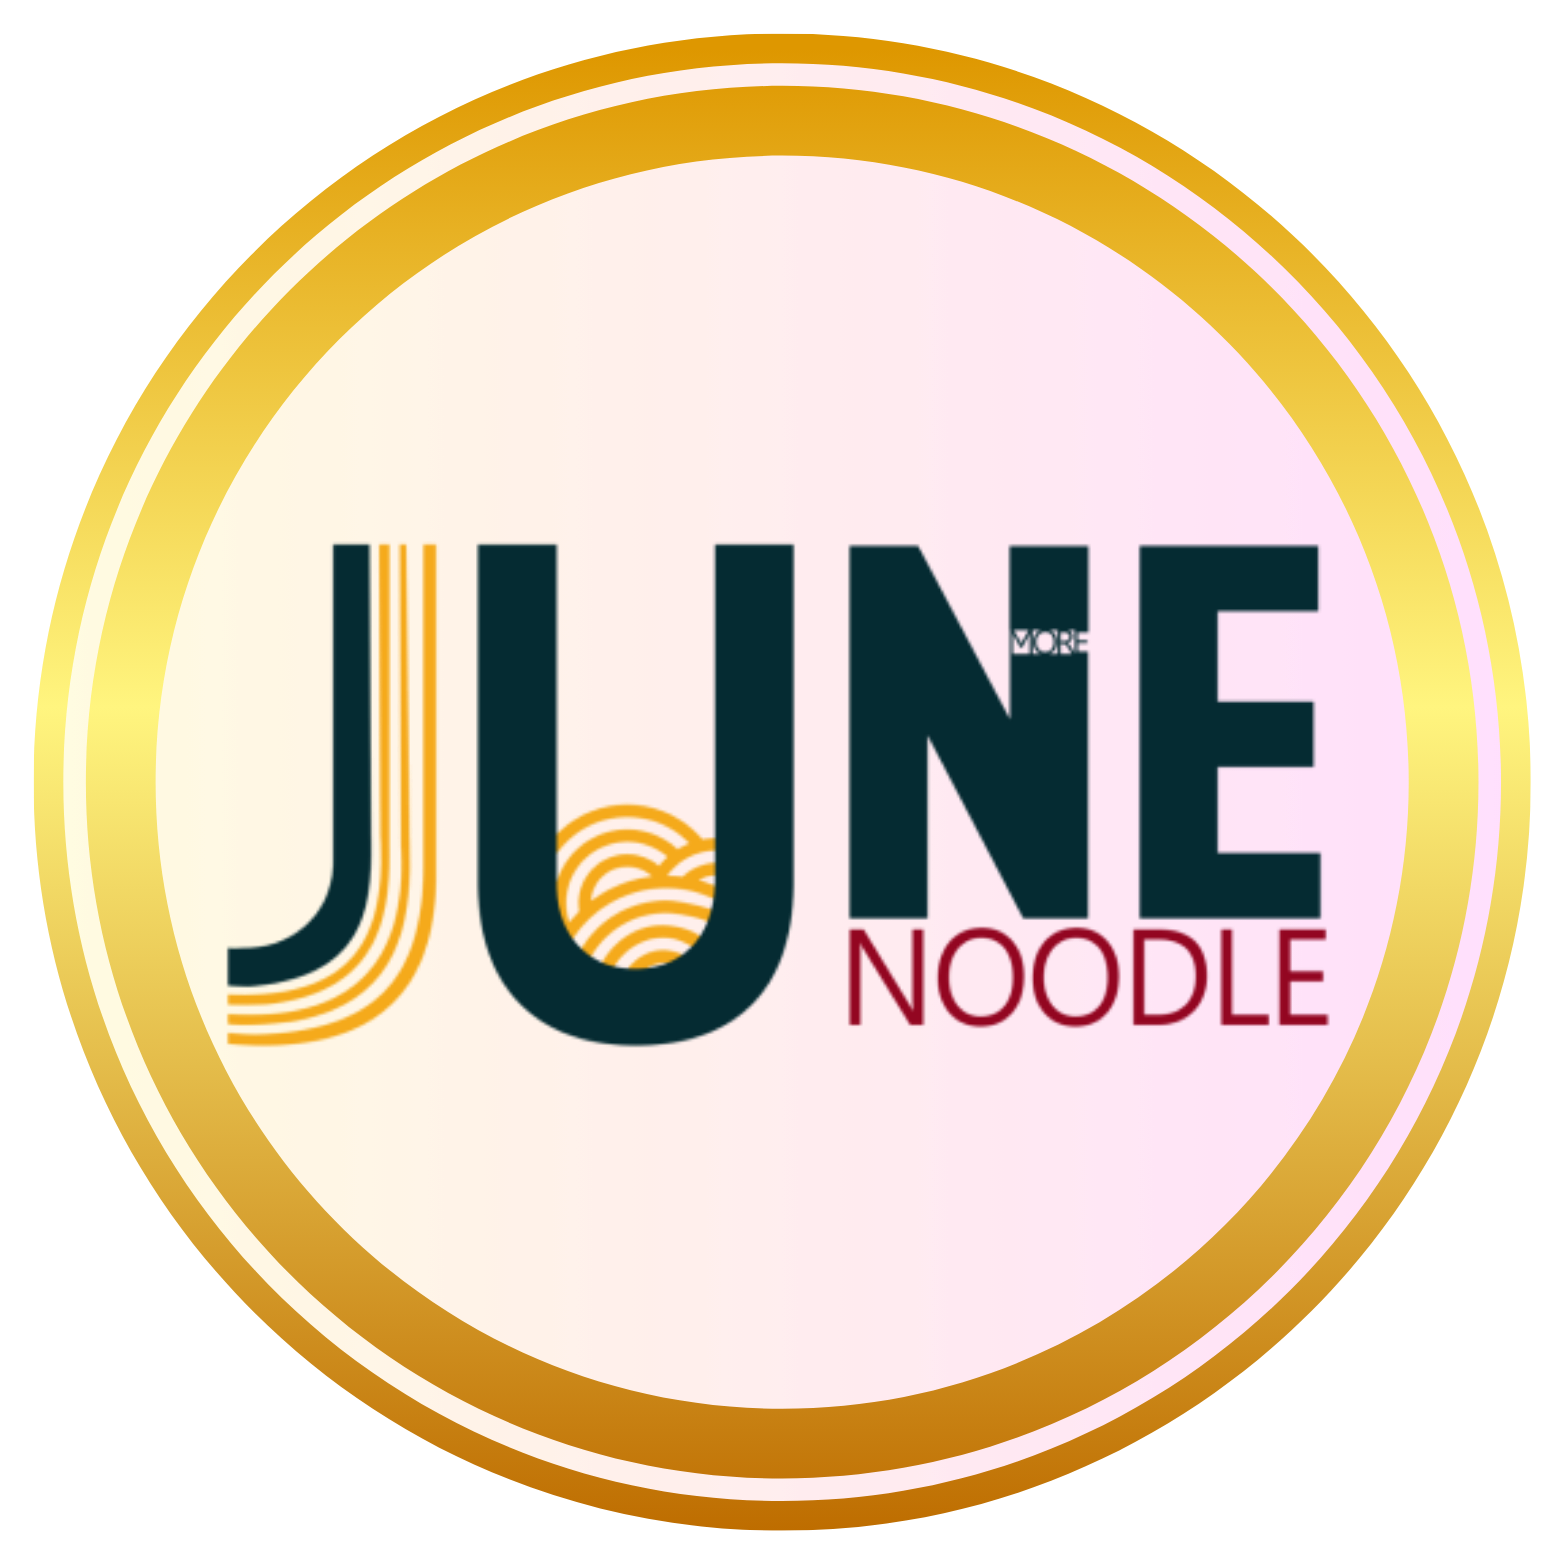 June Noodle